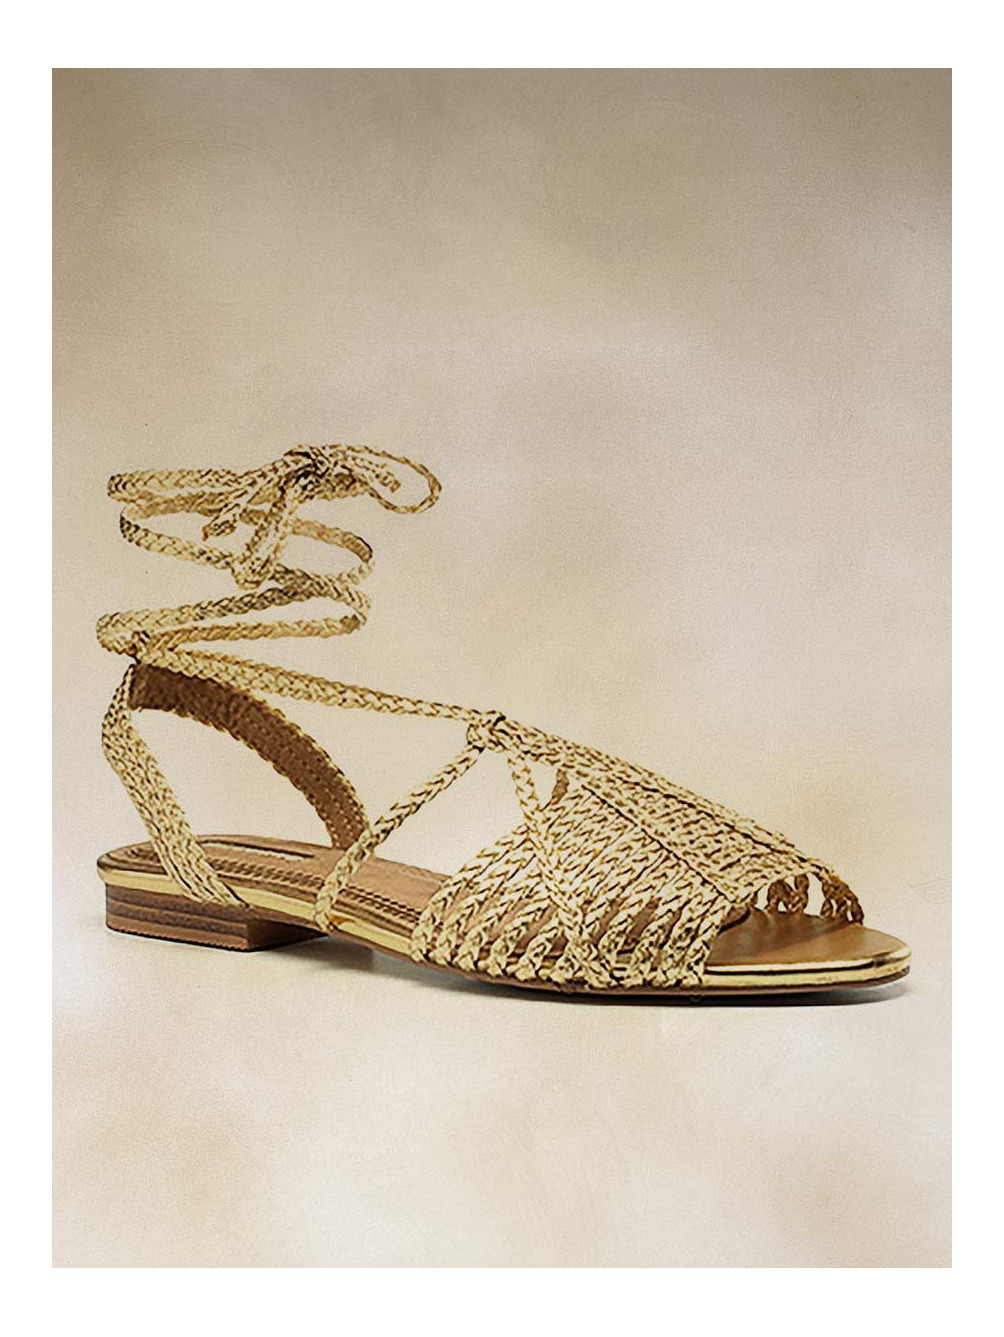 Sandalias Romanas Oro, Zapatos Mujer, Sandalias Planas, Mariquita Trasquilá